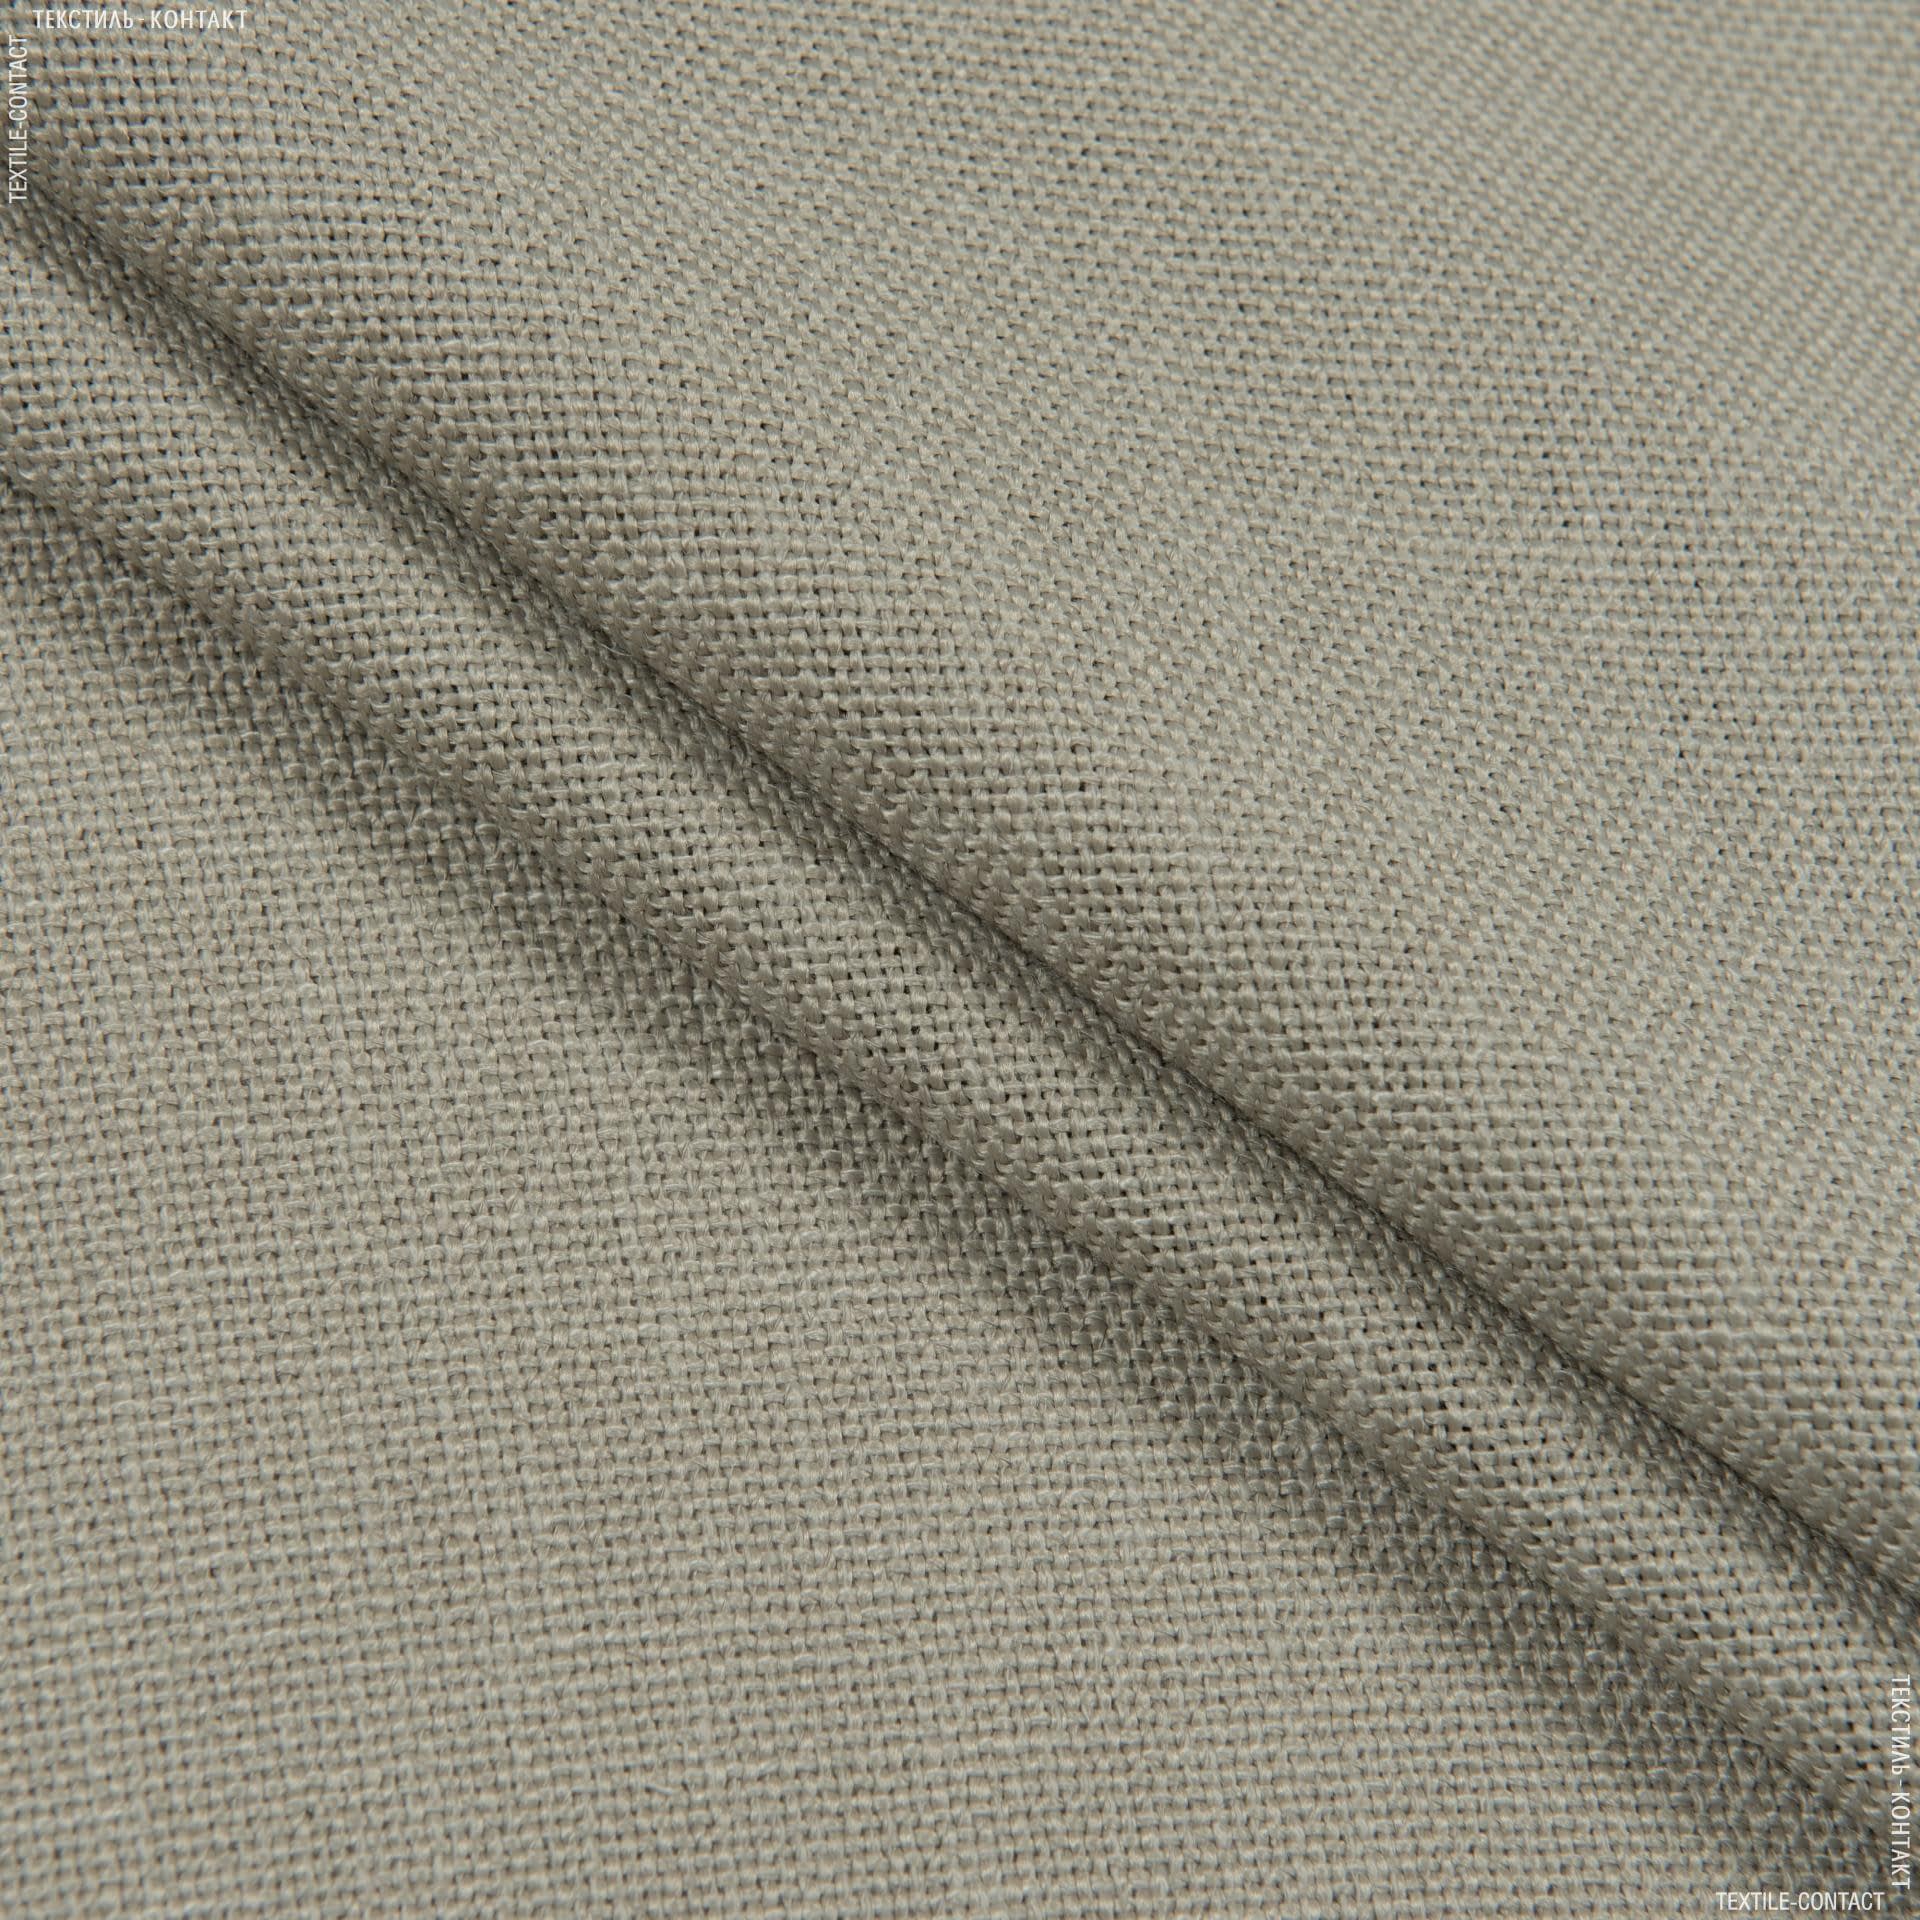 Ткани для штор - Декоративная ткань шархан мокрый песок